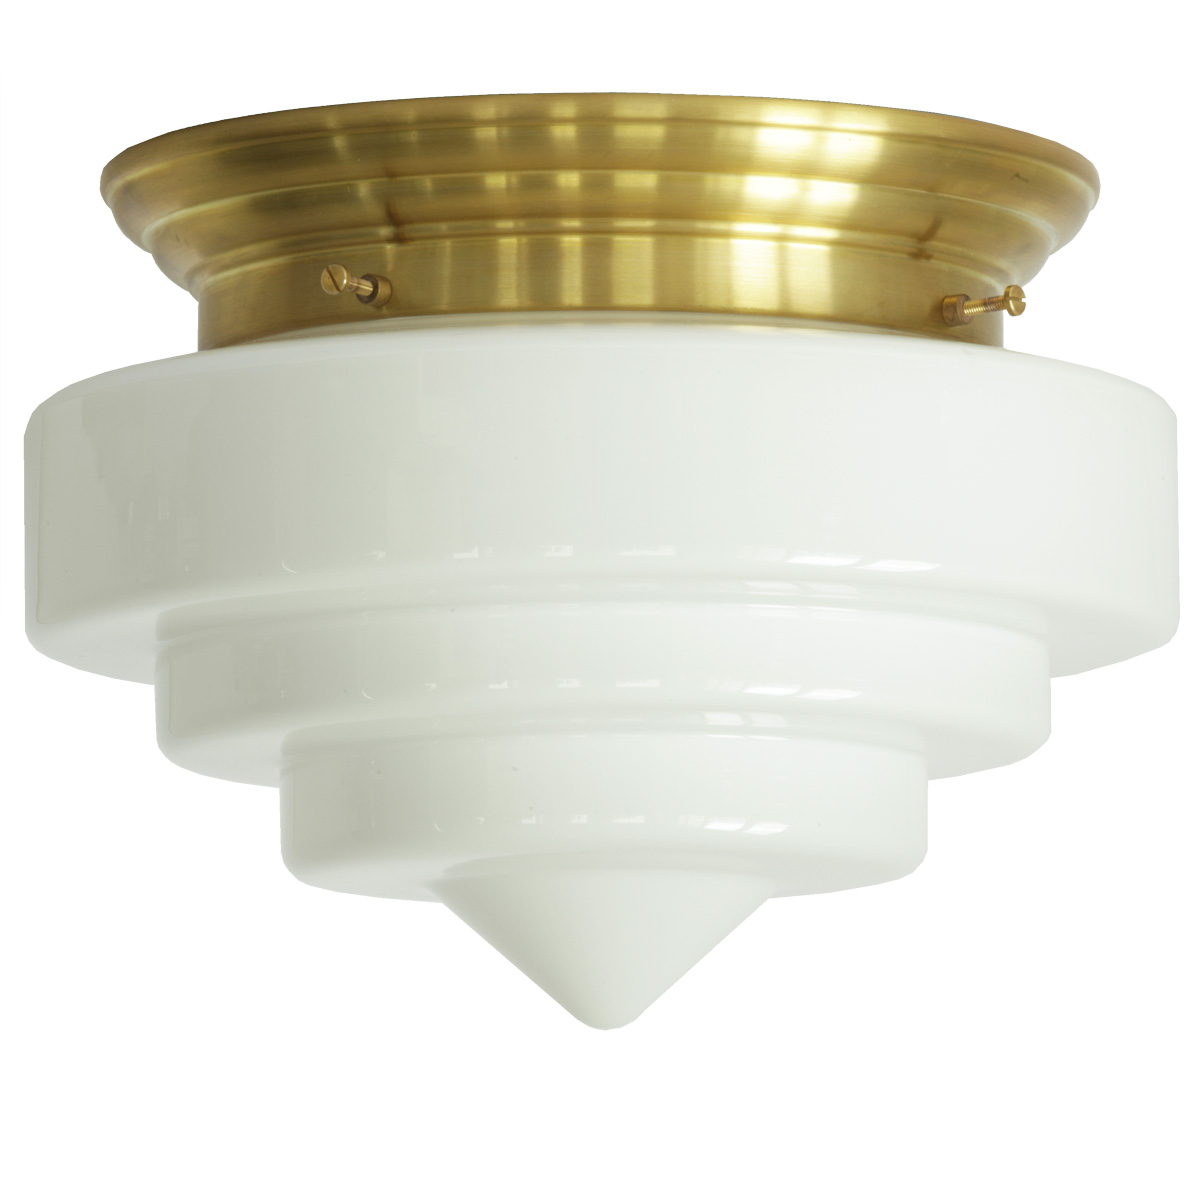 Deckenlampe mit dreistufigem weißen Spitzglas Ø 25 cm: Opalglas-Deckenleuchte, abgebildet mit Deckenteil in Messing natur